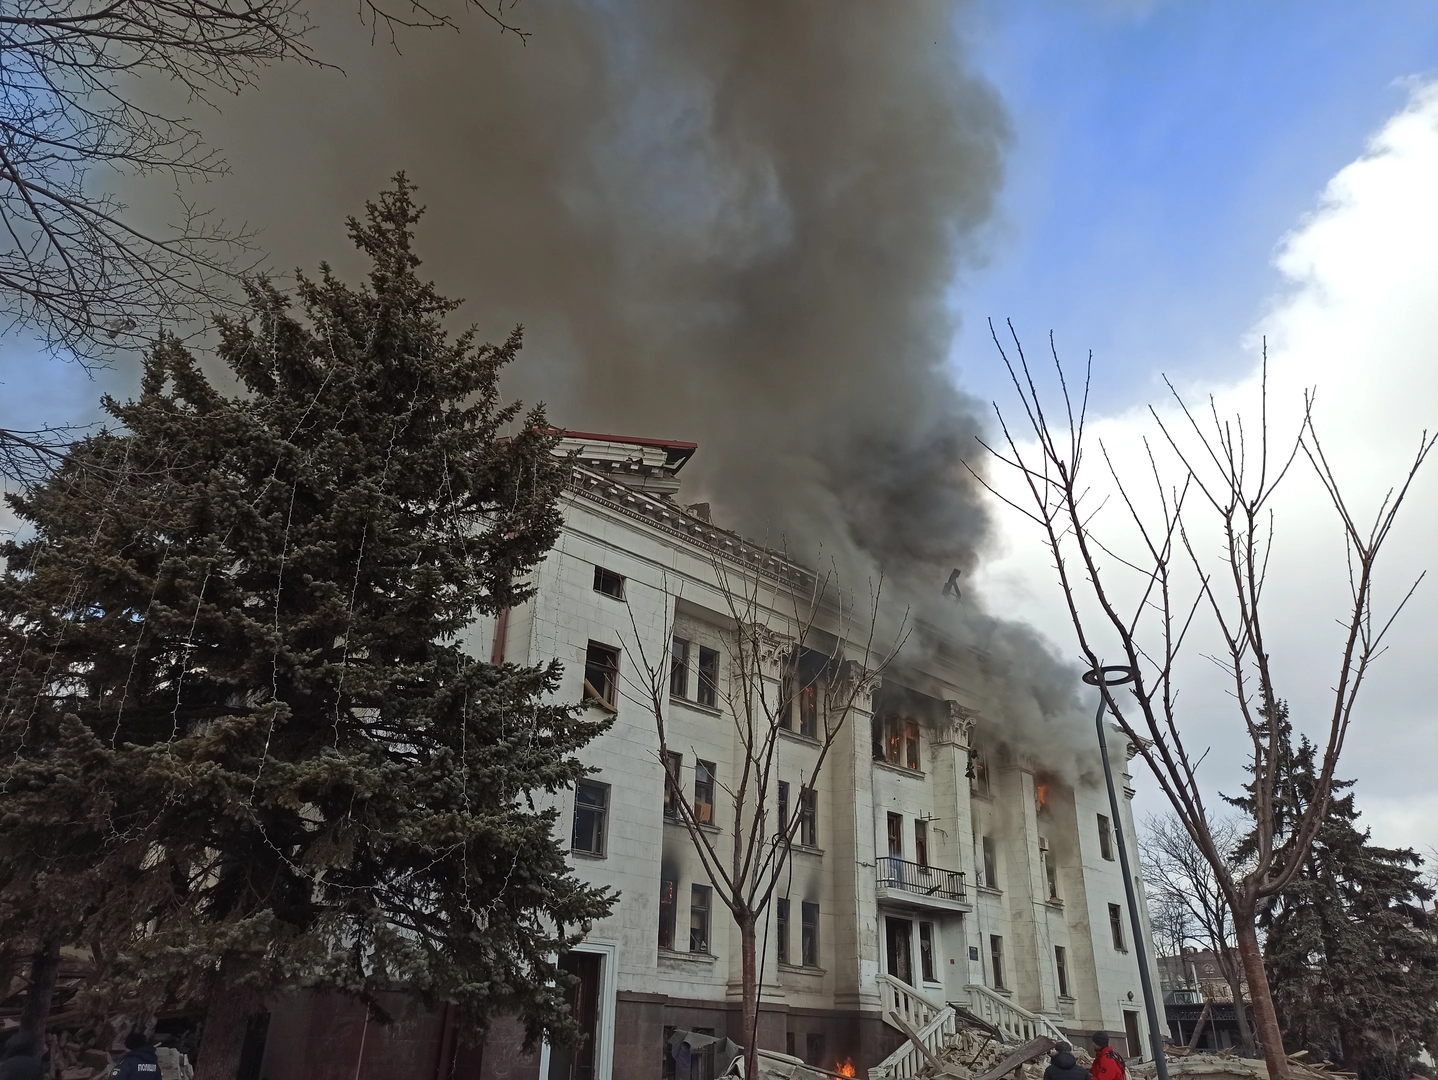 Фото документує поширення пожежі в будівлі Драмтеатру до її заднього фасаду. Час фото: 11:16. ©